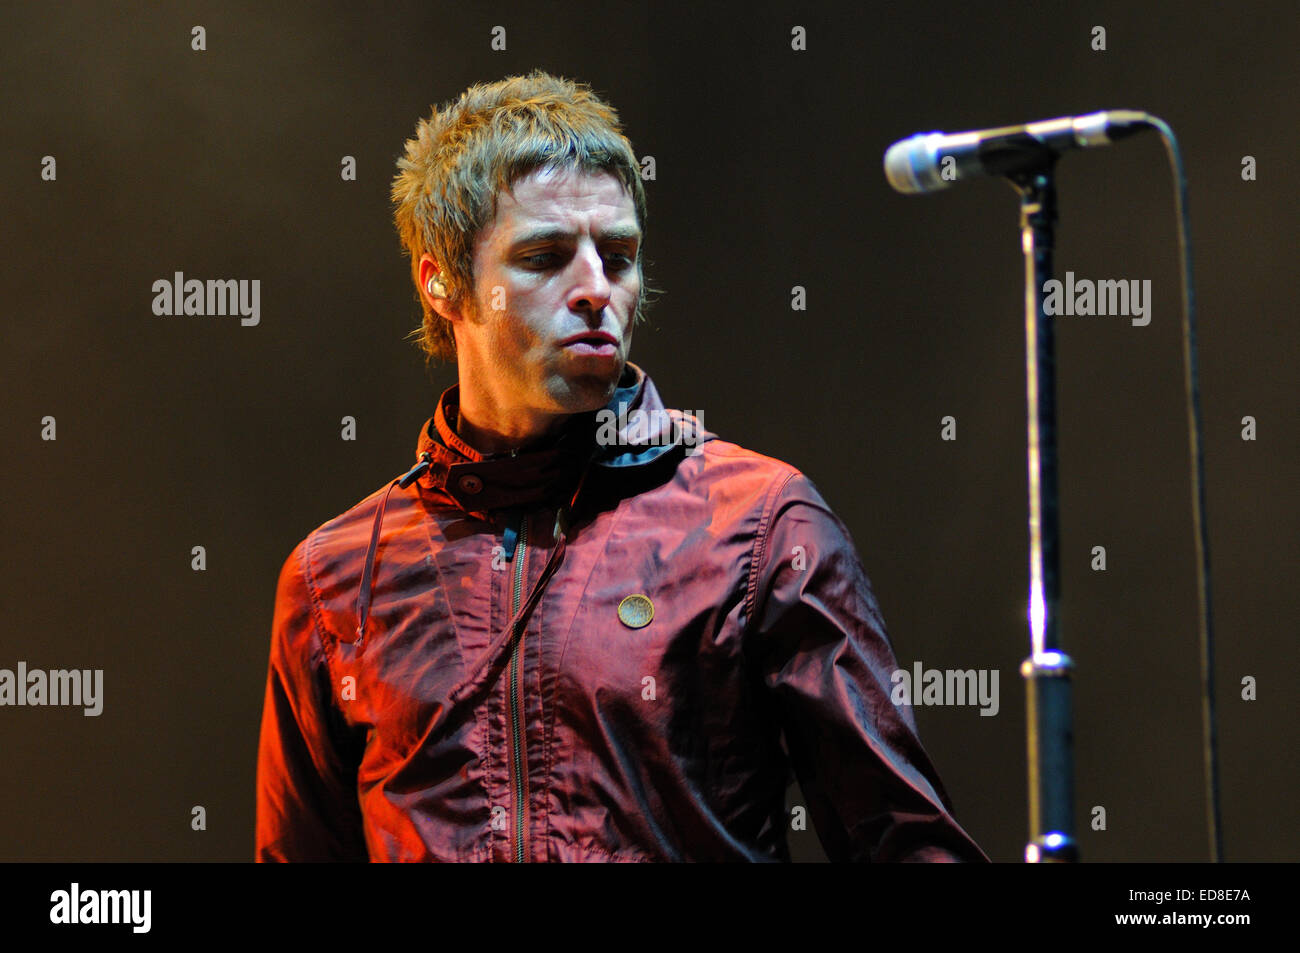 BENICASIM, ESPAGNE - 19 juillet : Liam Gallagher, leader de Beady Eye band, concert au FIB. Banque D'Images